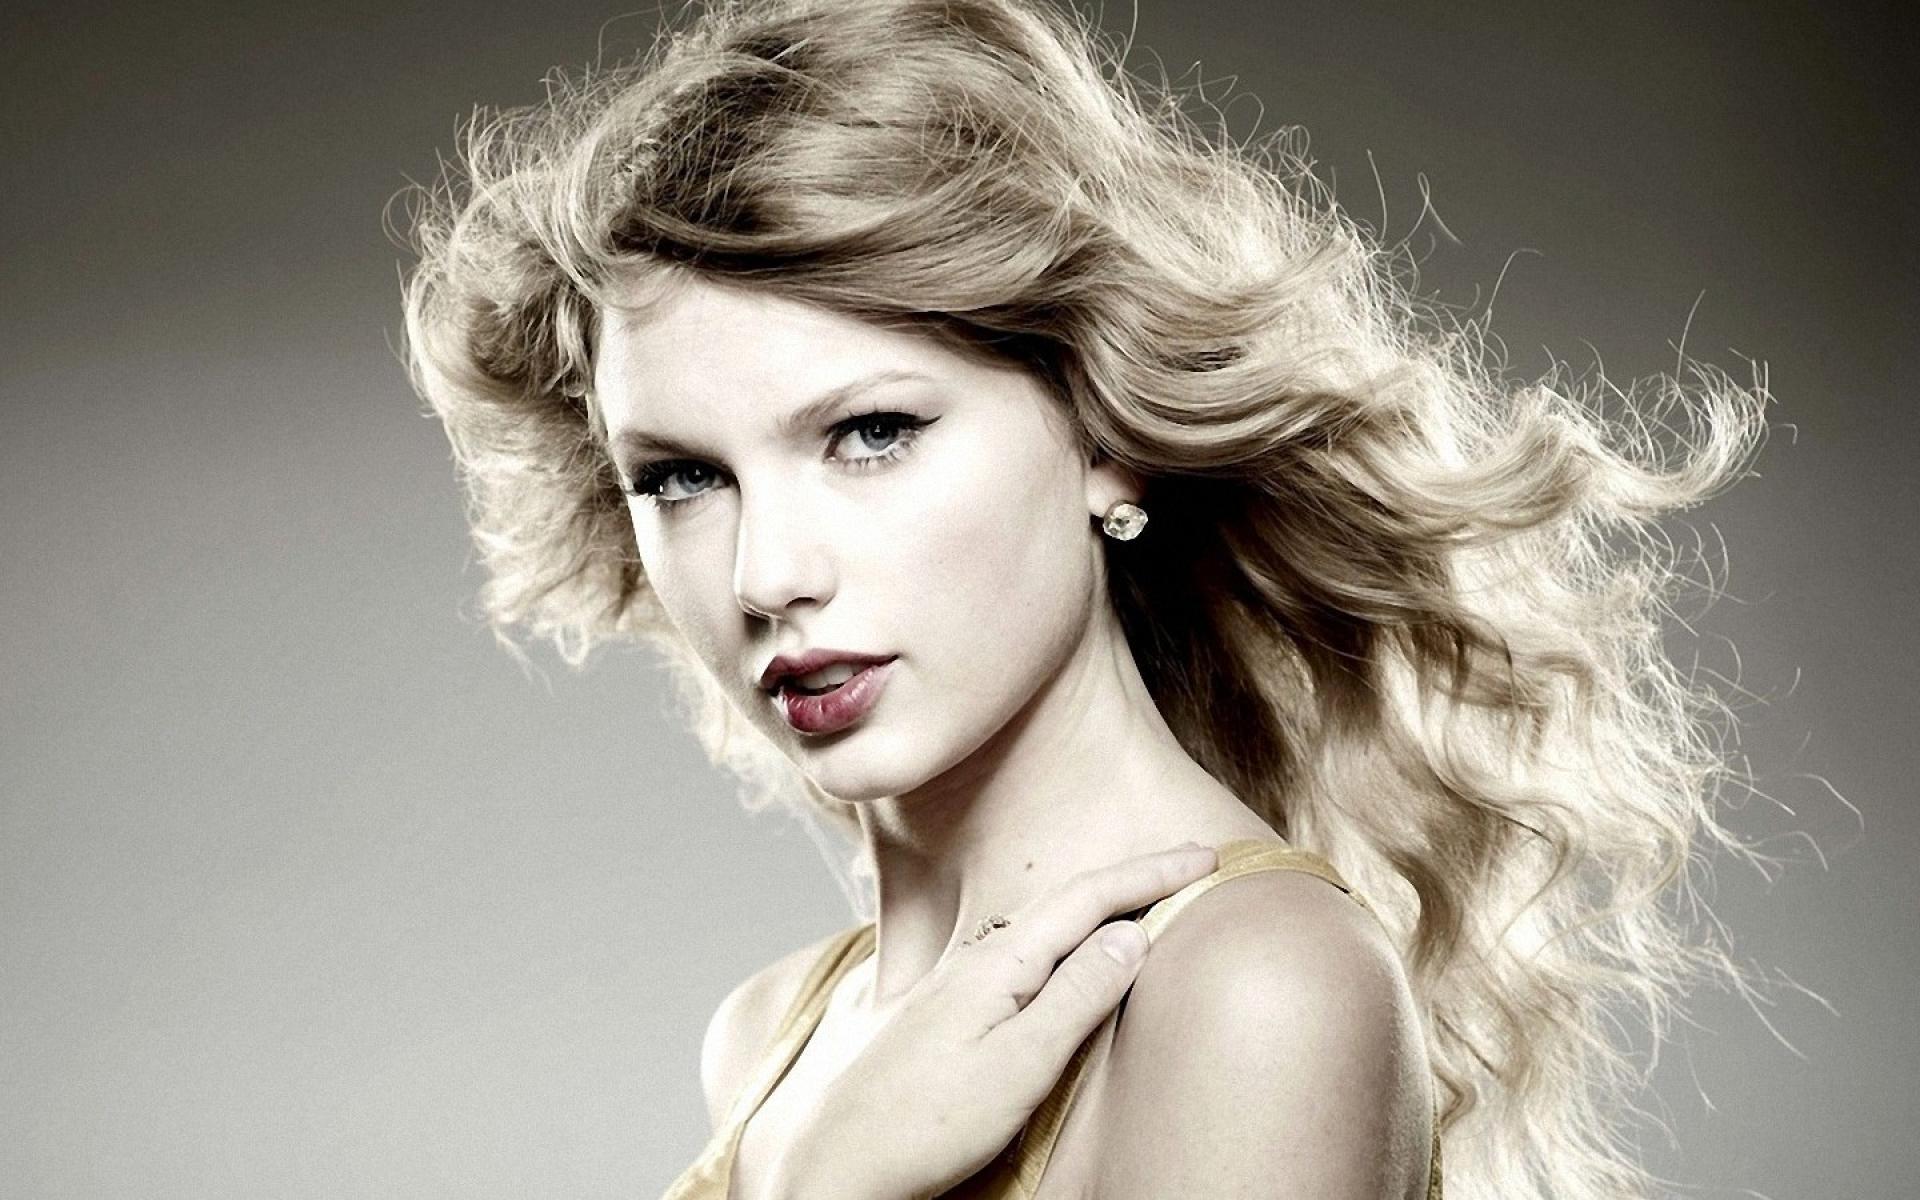 Музыка Taylor Swift фотосессия - обои для рабочего стола, картинки, фото.